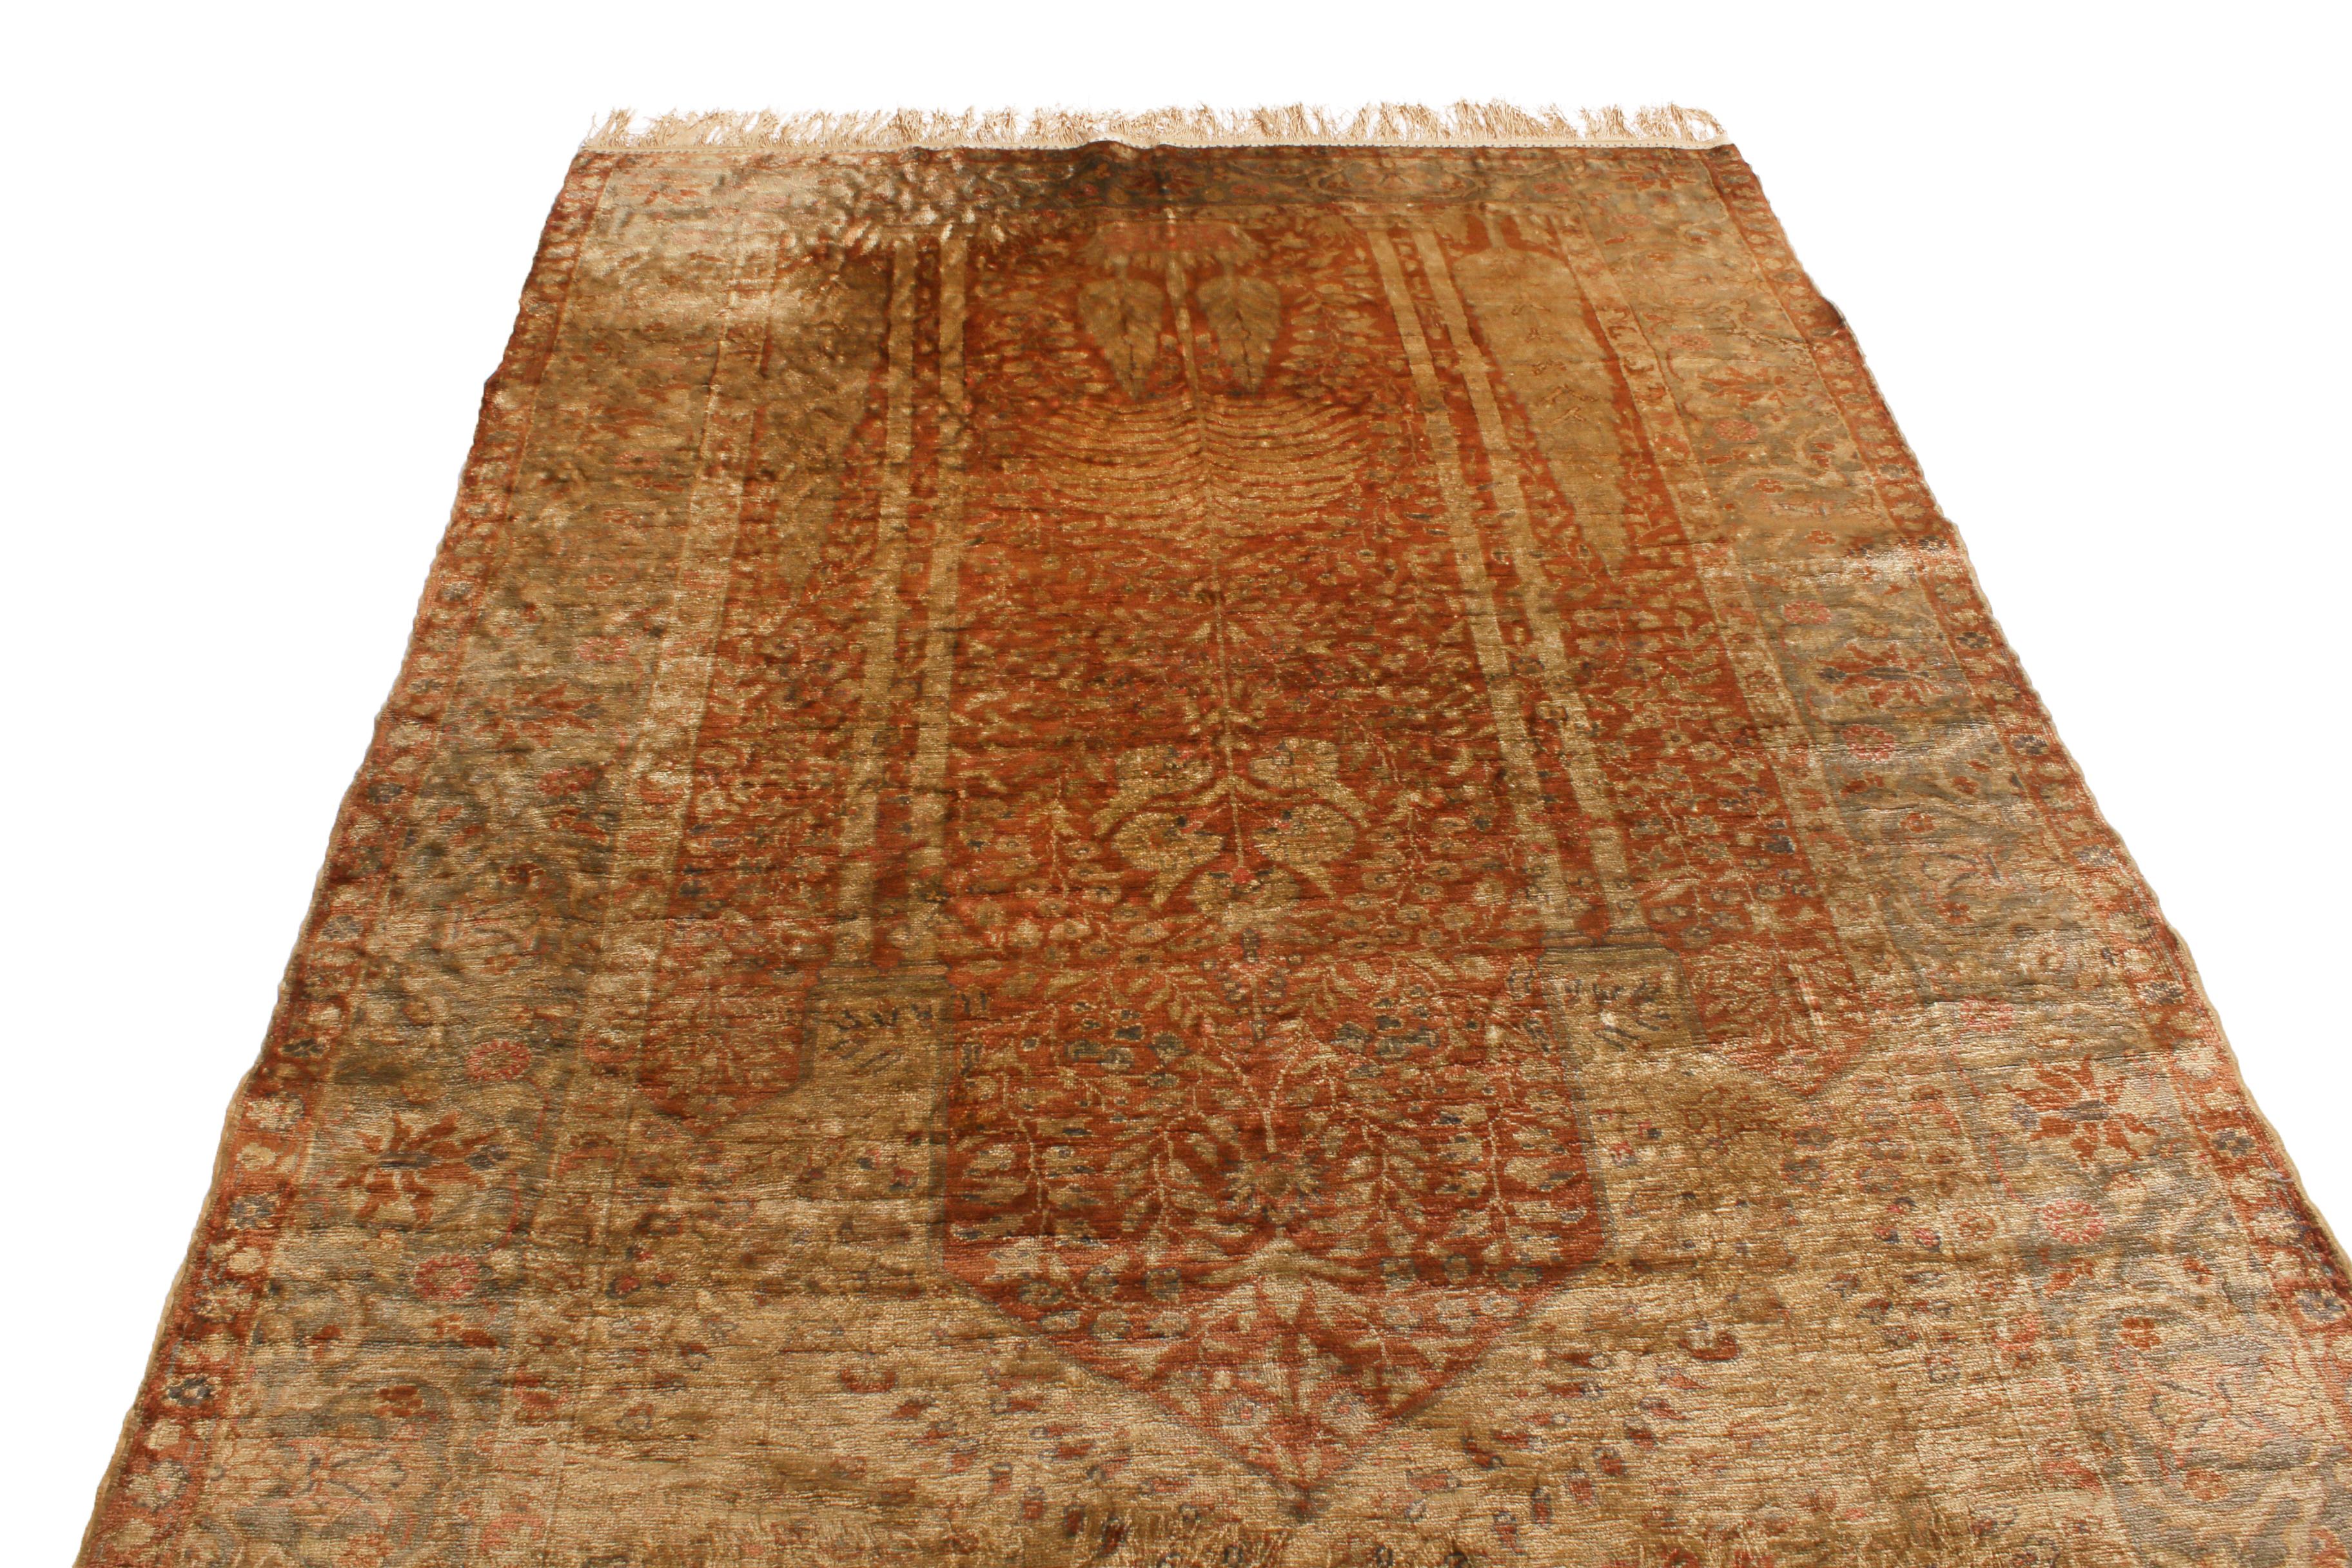 Dieser antike Kayseri-Teppich wurde zwischen 1880 und 1890 in der Türkei aus feiner Wolle handgeknüpft. Er vereint außergewöhnliche, leuchtende kupfer- und beigebraune Farbtöne mit einem ungewöhnlich großzügigen Medaillonfeld, das das Motiv des